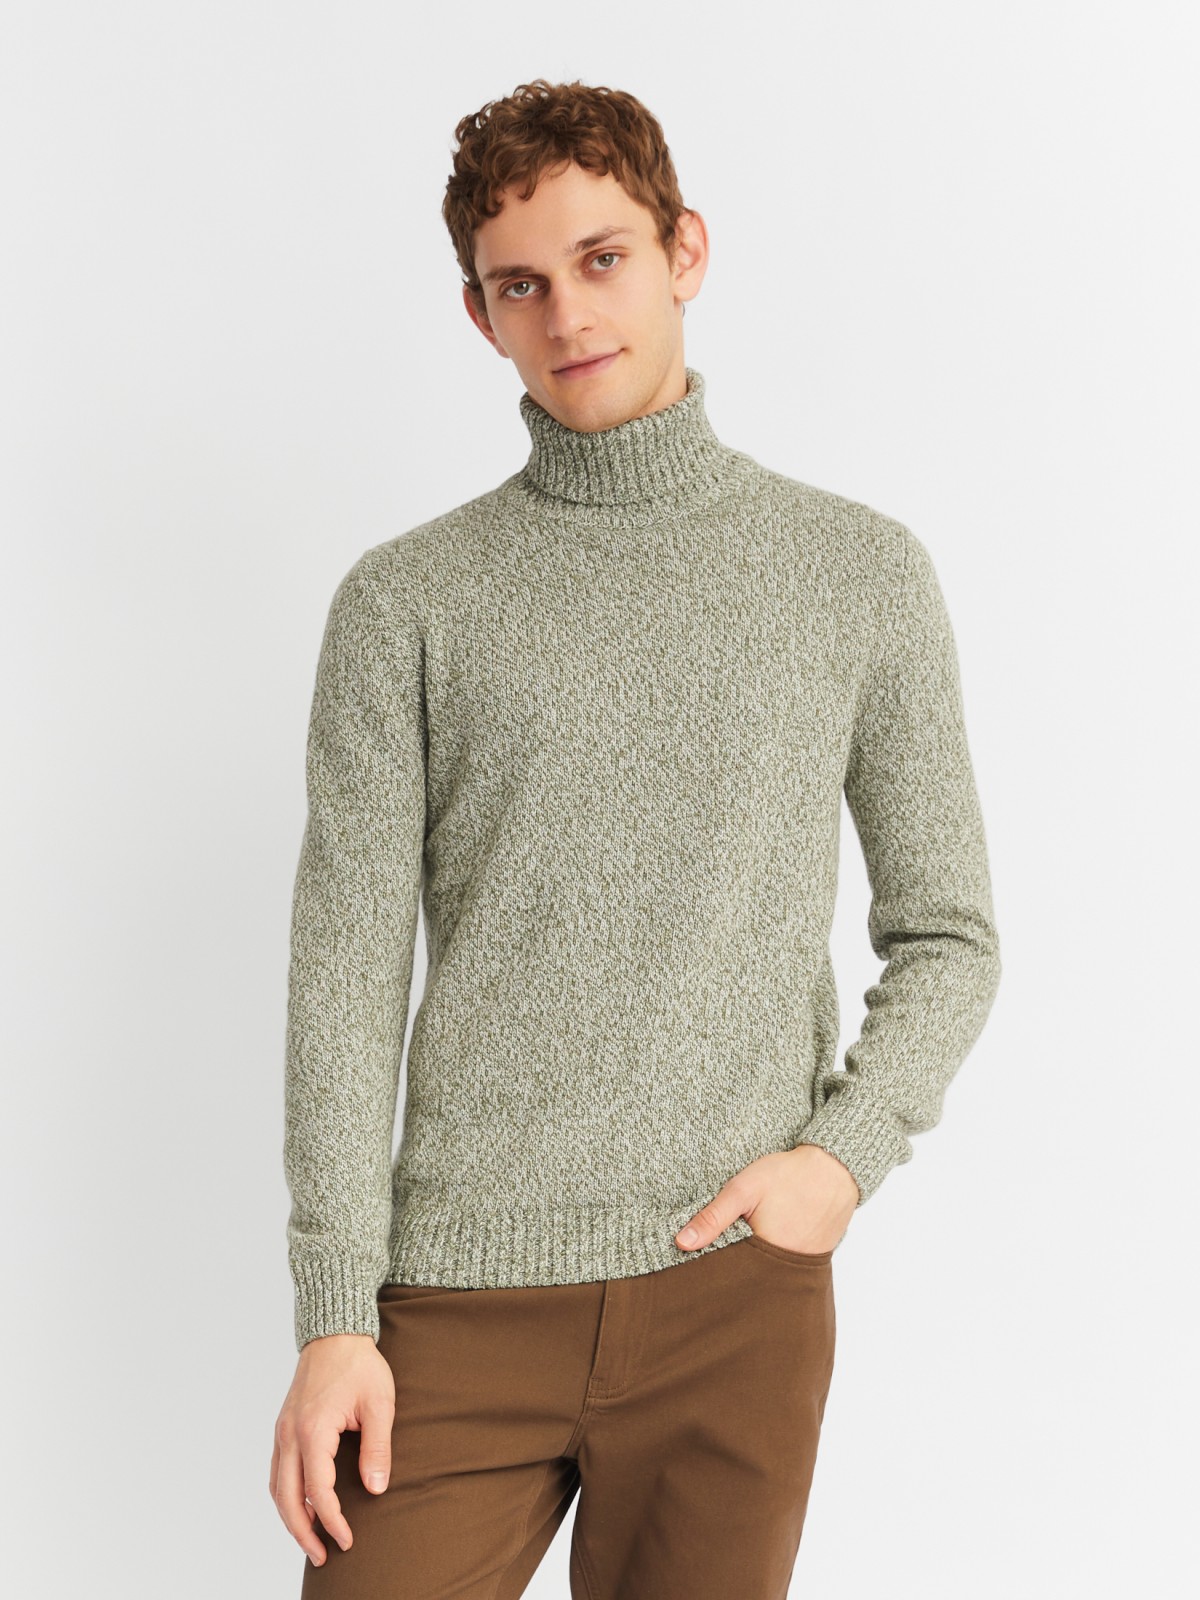 Вязаная шерстяная водолазка-свитер с горлом zolla 013436163012, цвет зеленый, размер S